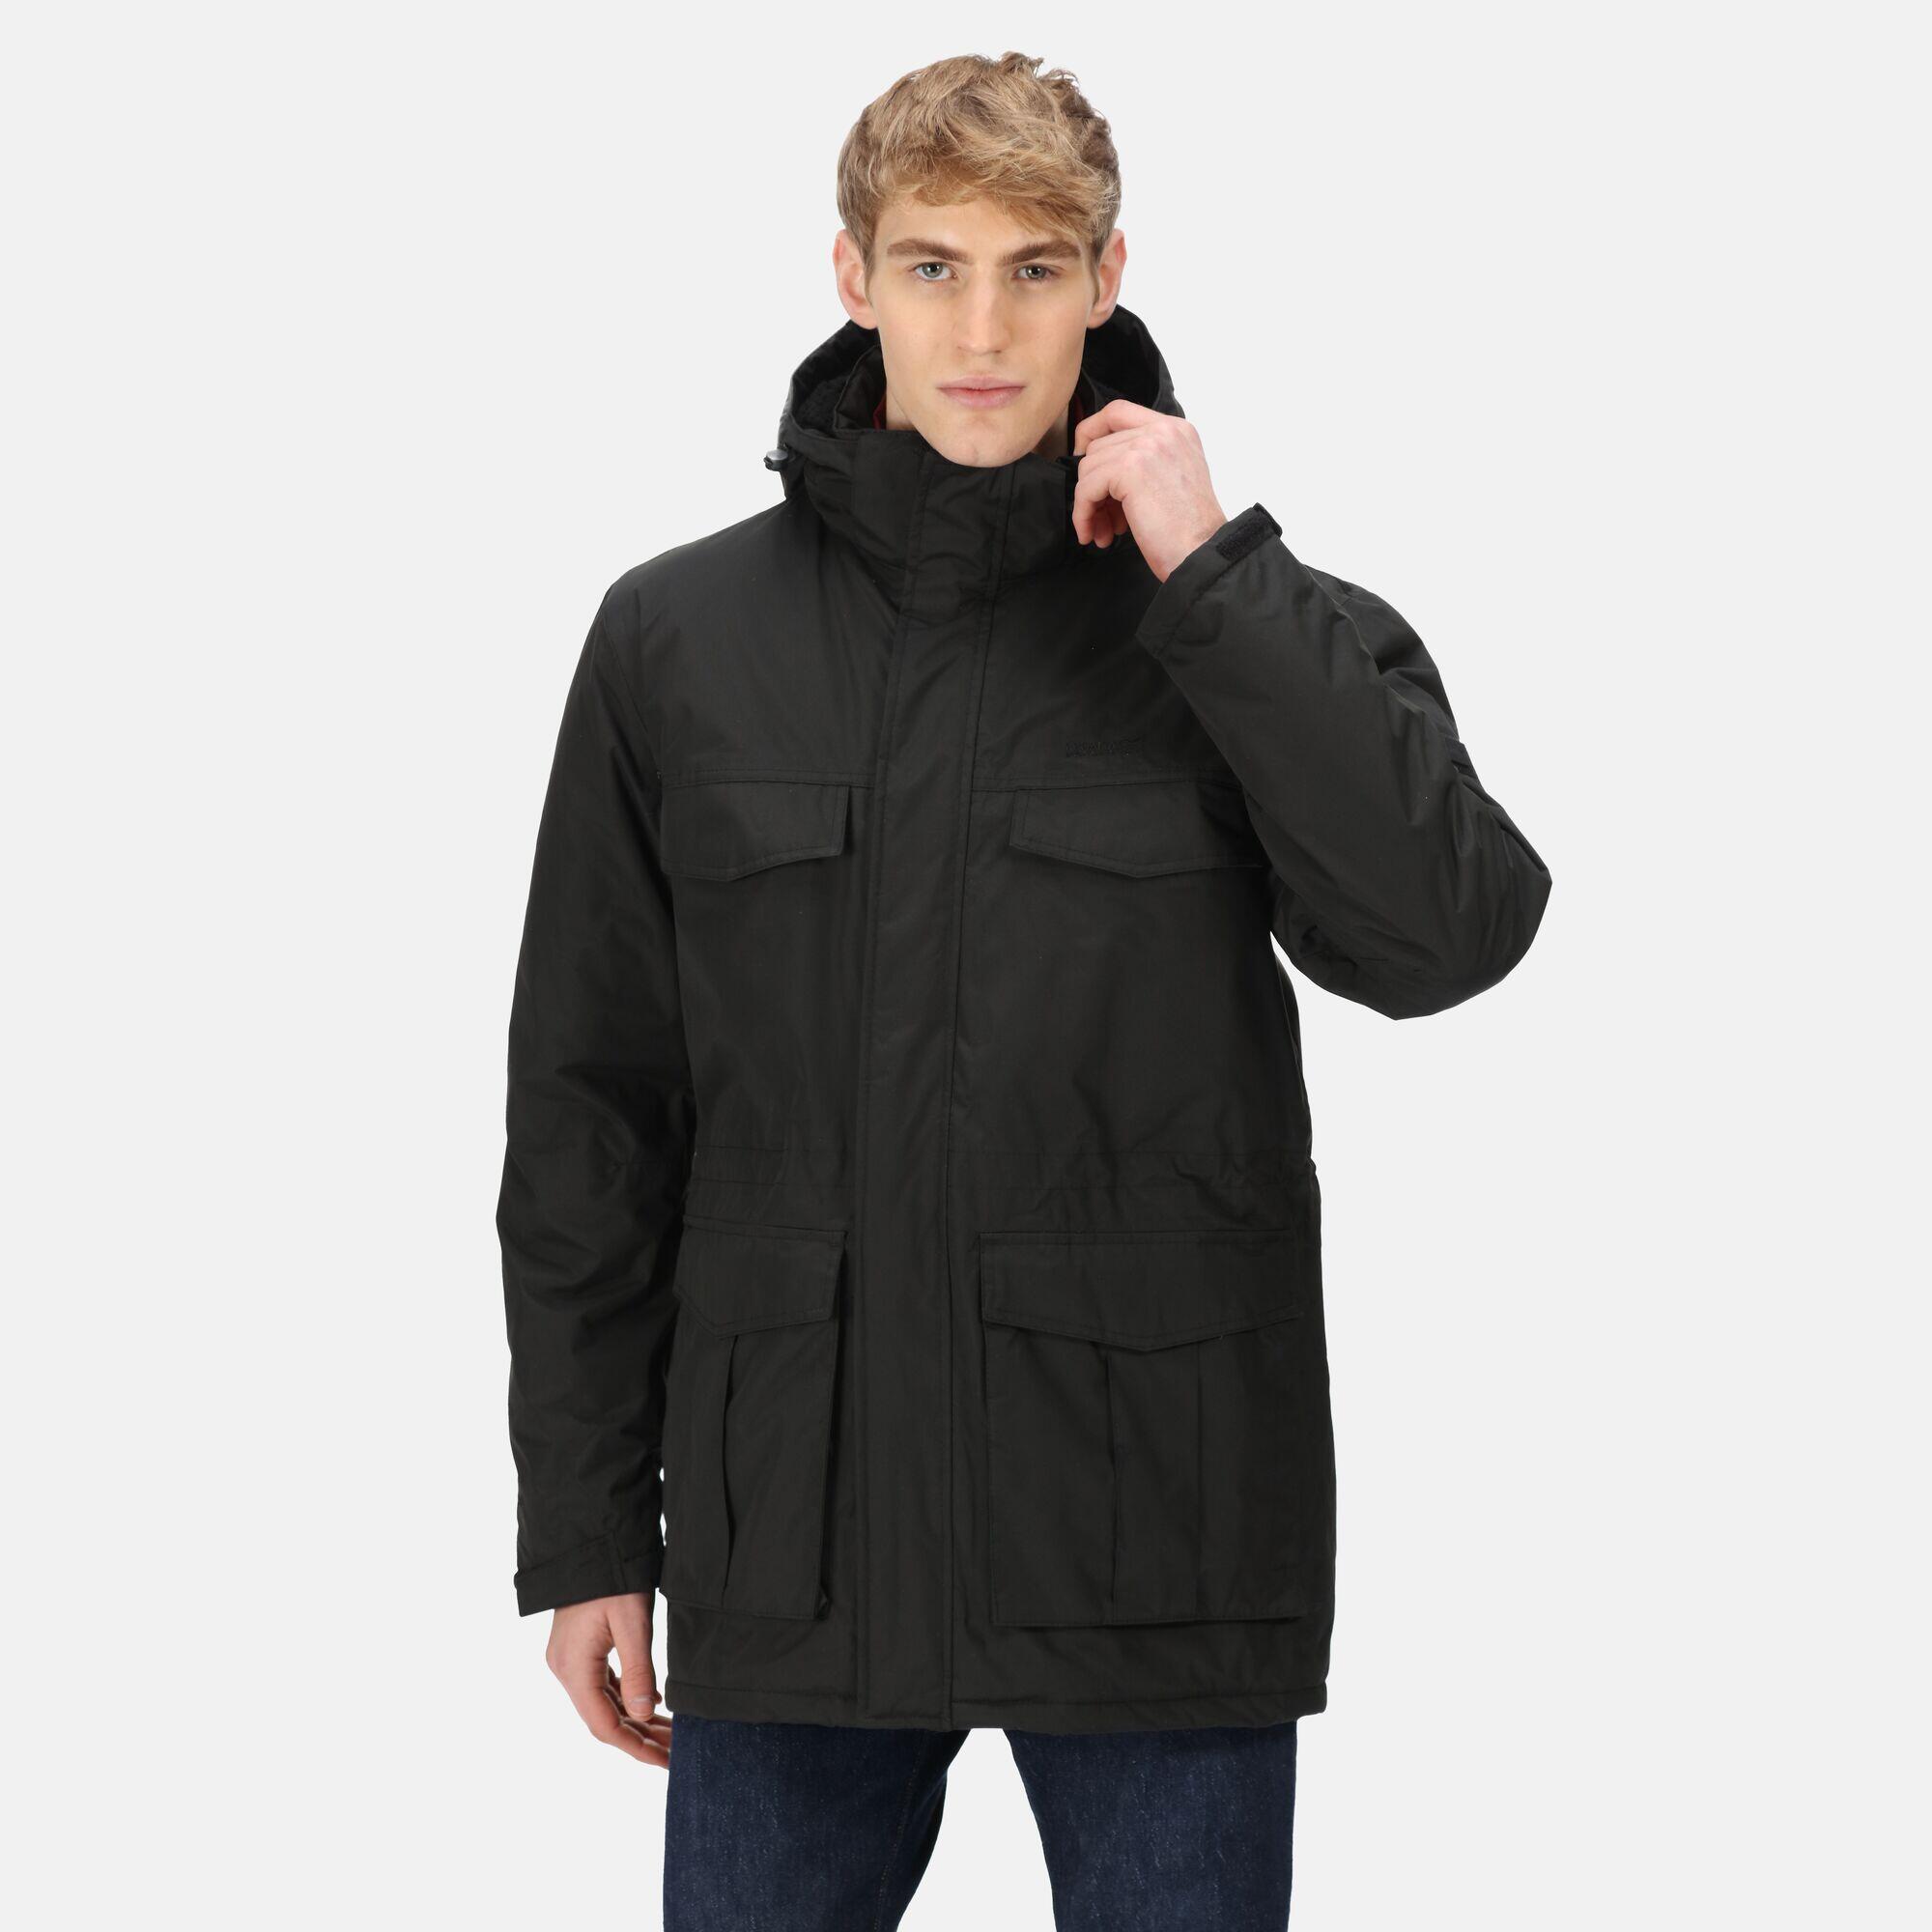 Куртка-парка Regatta Palben непромокаемая утепленная с капюшоном мужская,черный – заказать по доступной цене из-за рубежа в «CDEK.Shopping»